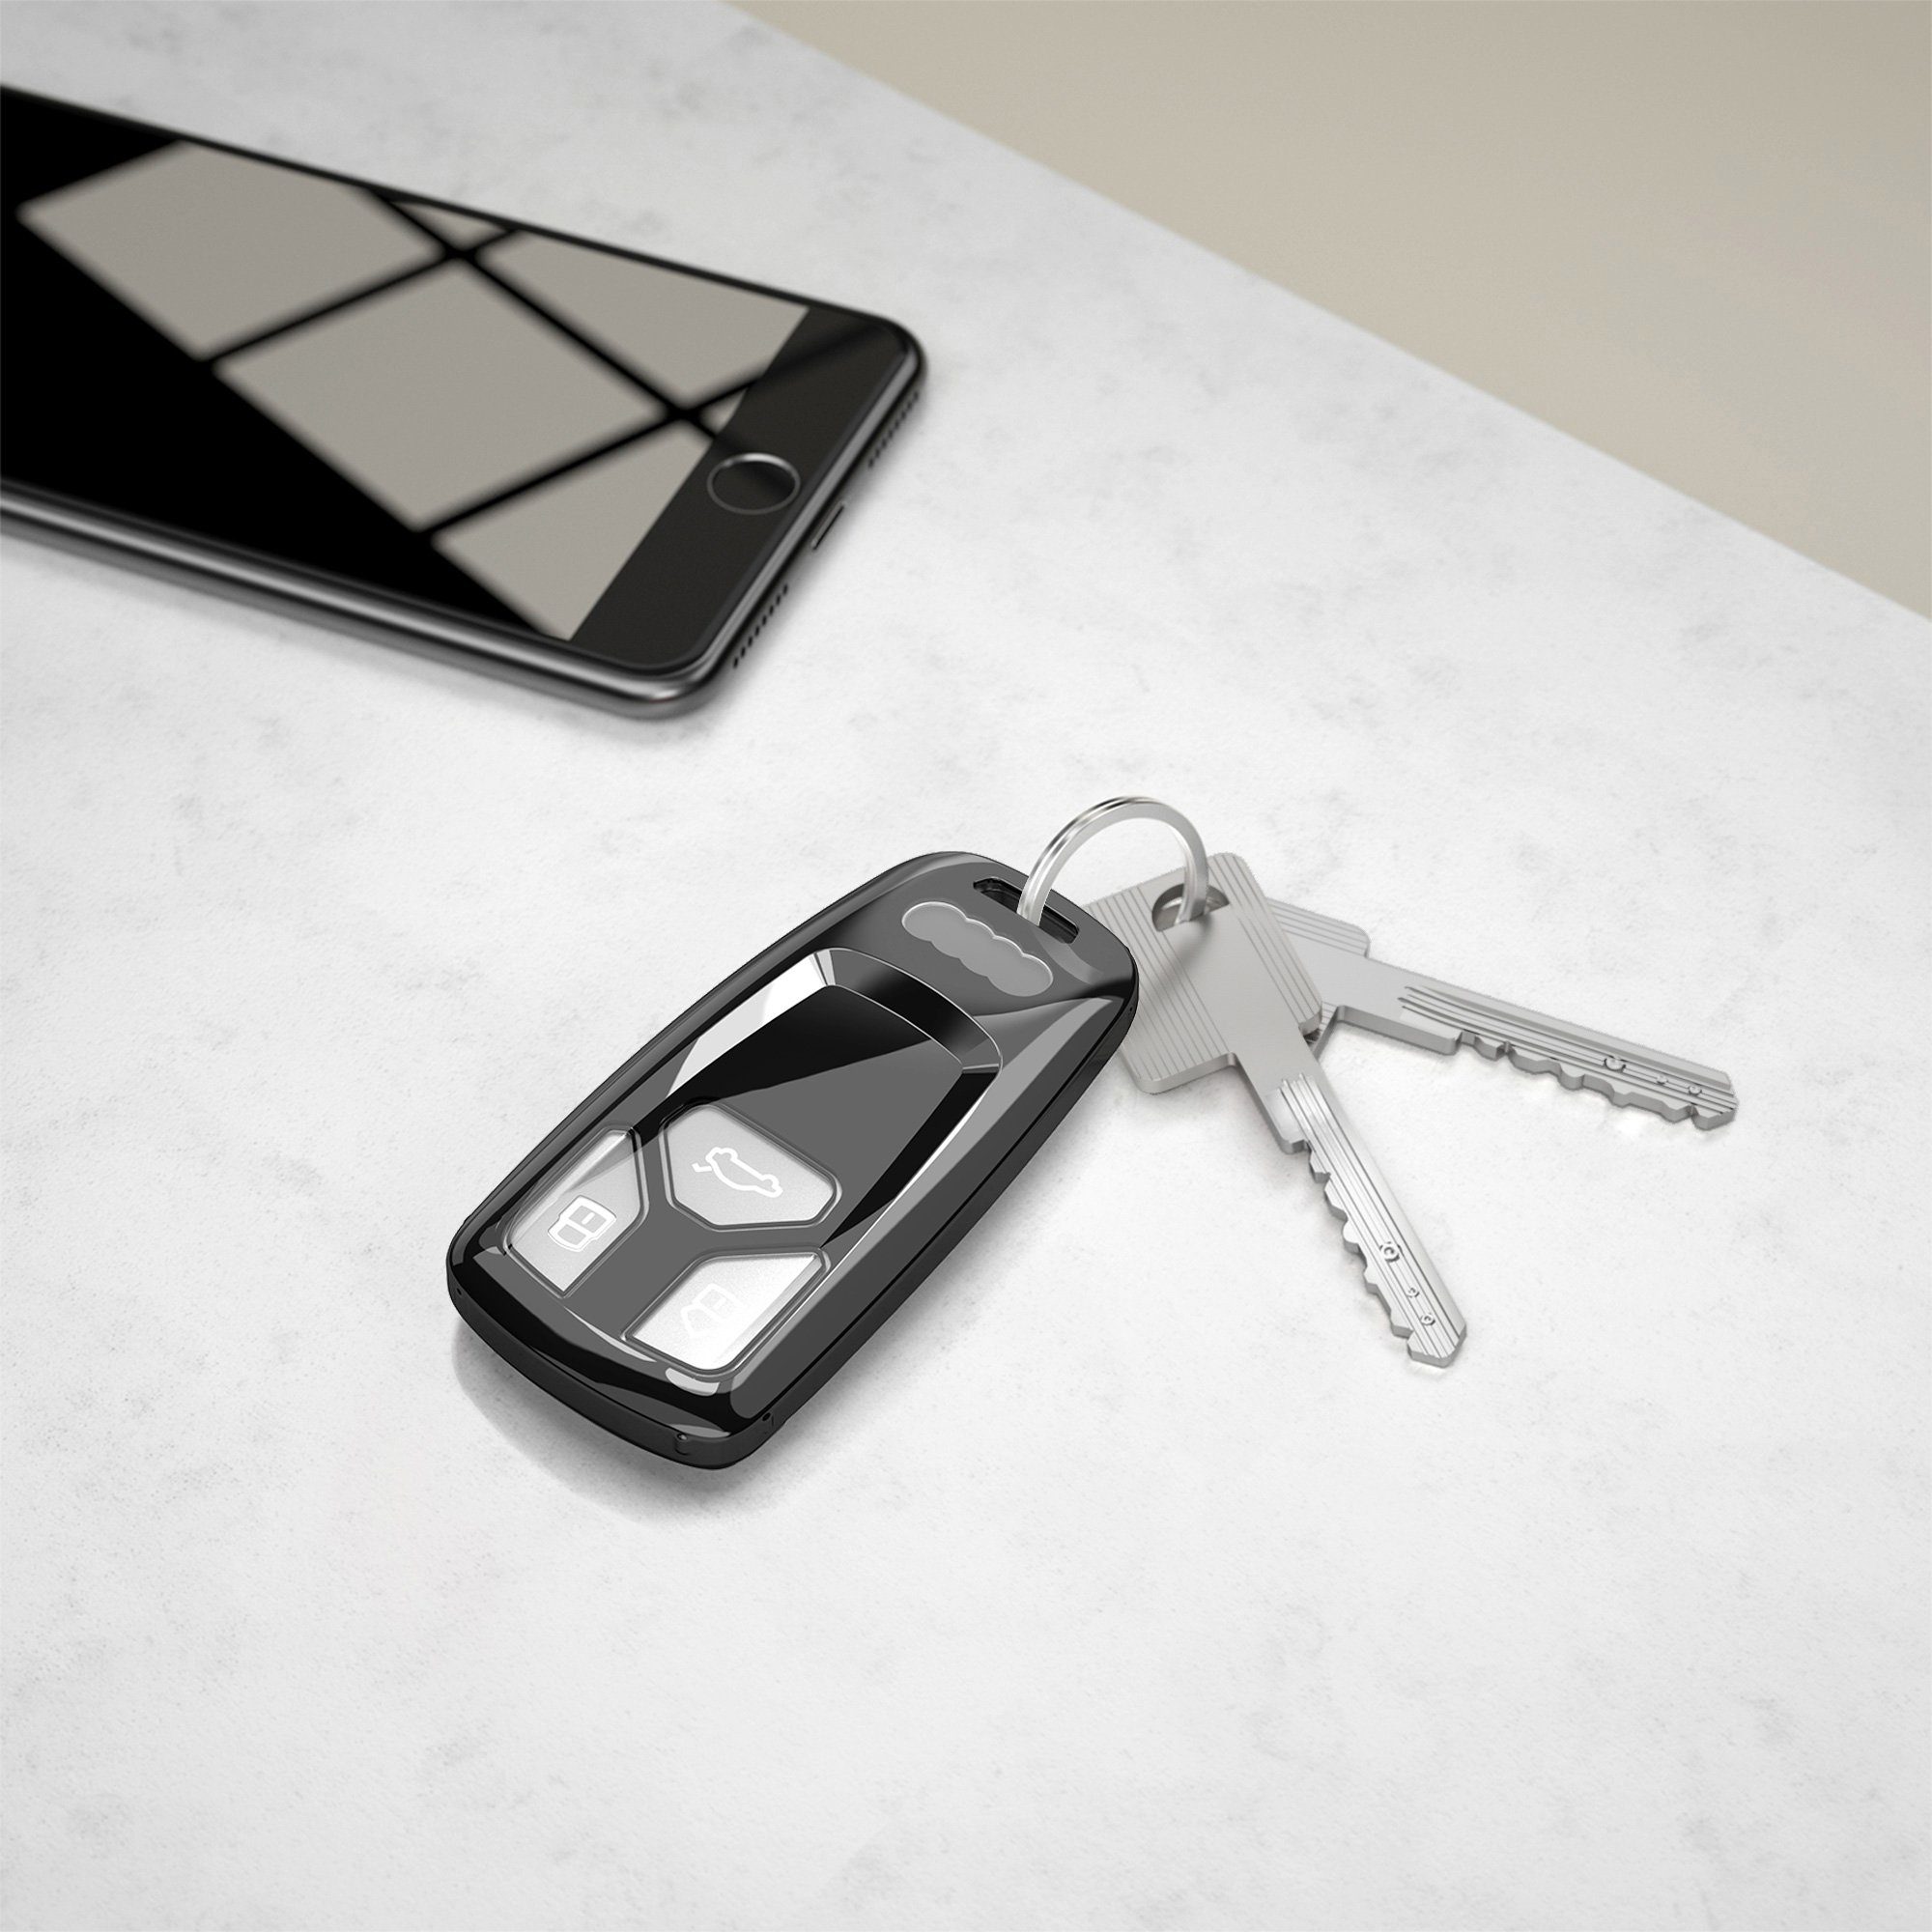 Audi, für Design Cover Magnolien Marmor Fullbody kwmobile Autoschlüssel Schutzhülle Schlüsseltasche Schlüsselhülle TPU Hülle